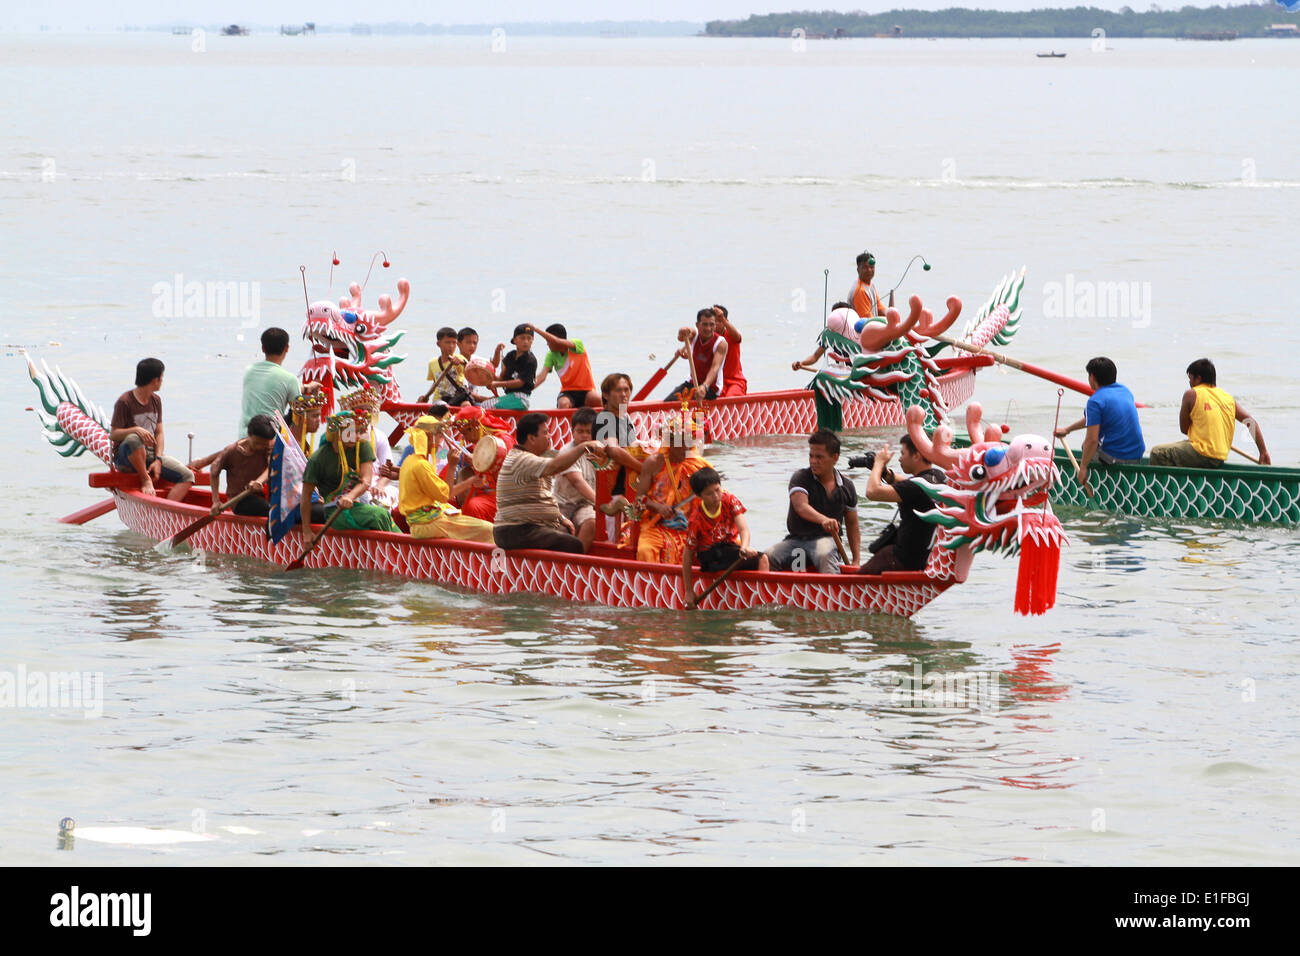 Il Bintan, Indonesia. Il 1 giugno, 2014. 2 Giugno 2014: Indonesia Chinese celebrato Duangwu Festival con vestito dèi cinese il 2 giugno 2014 in Bintan, Sumatra, Indonesia. Festival Duanwu o dragon boat è un tradizionale e vacanza statutari originari della Cina. Festival Duanwu focus della maggior parte delle celebrazioni implica mangiare zongzi (riso appiccicoso considera avvolto in foglie di bambù), bere vino realgar (é'"é"ƒé…", xiÃ³nghuÃ¡ngjiÇ"), e racing barche drago. Il sole è considerata la più forte in tutto il tempo del solstizio d'estate, come la luce del giorno nell'emisfero settentrionale è la più lunga. Il sole, Foto Stock